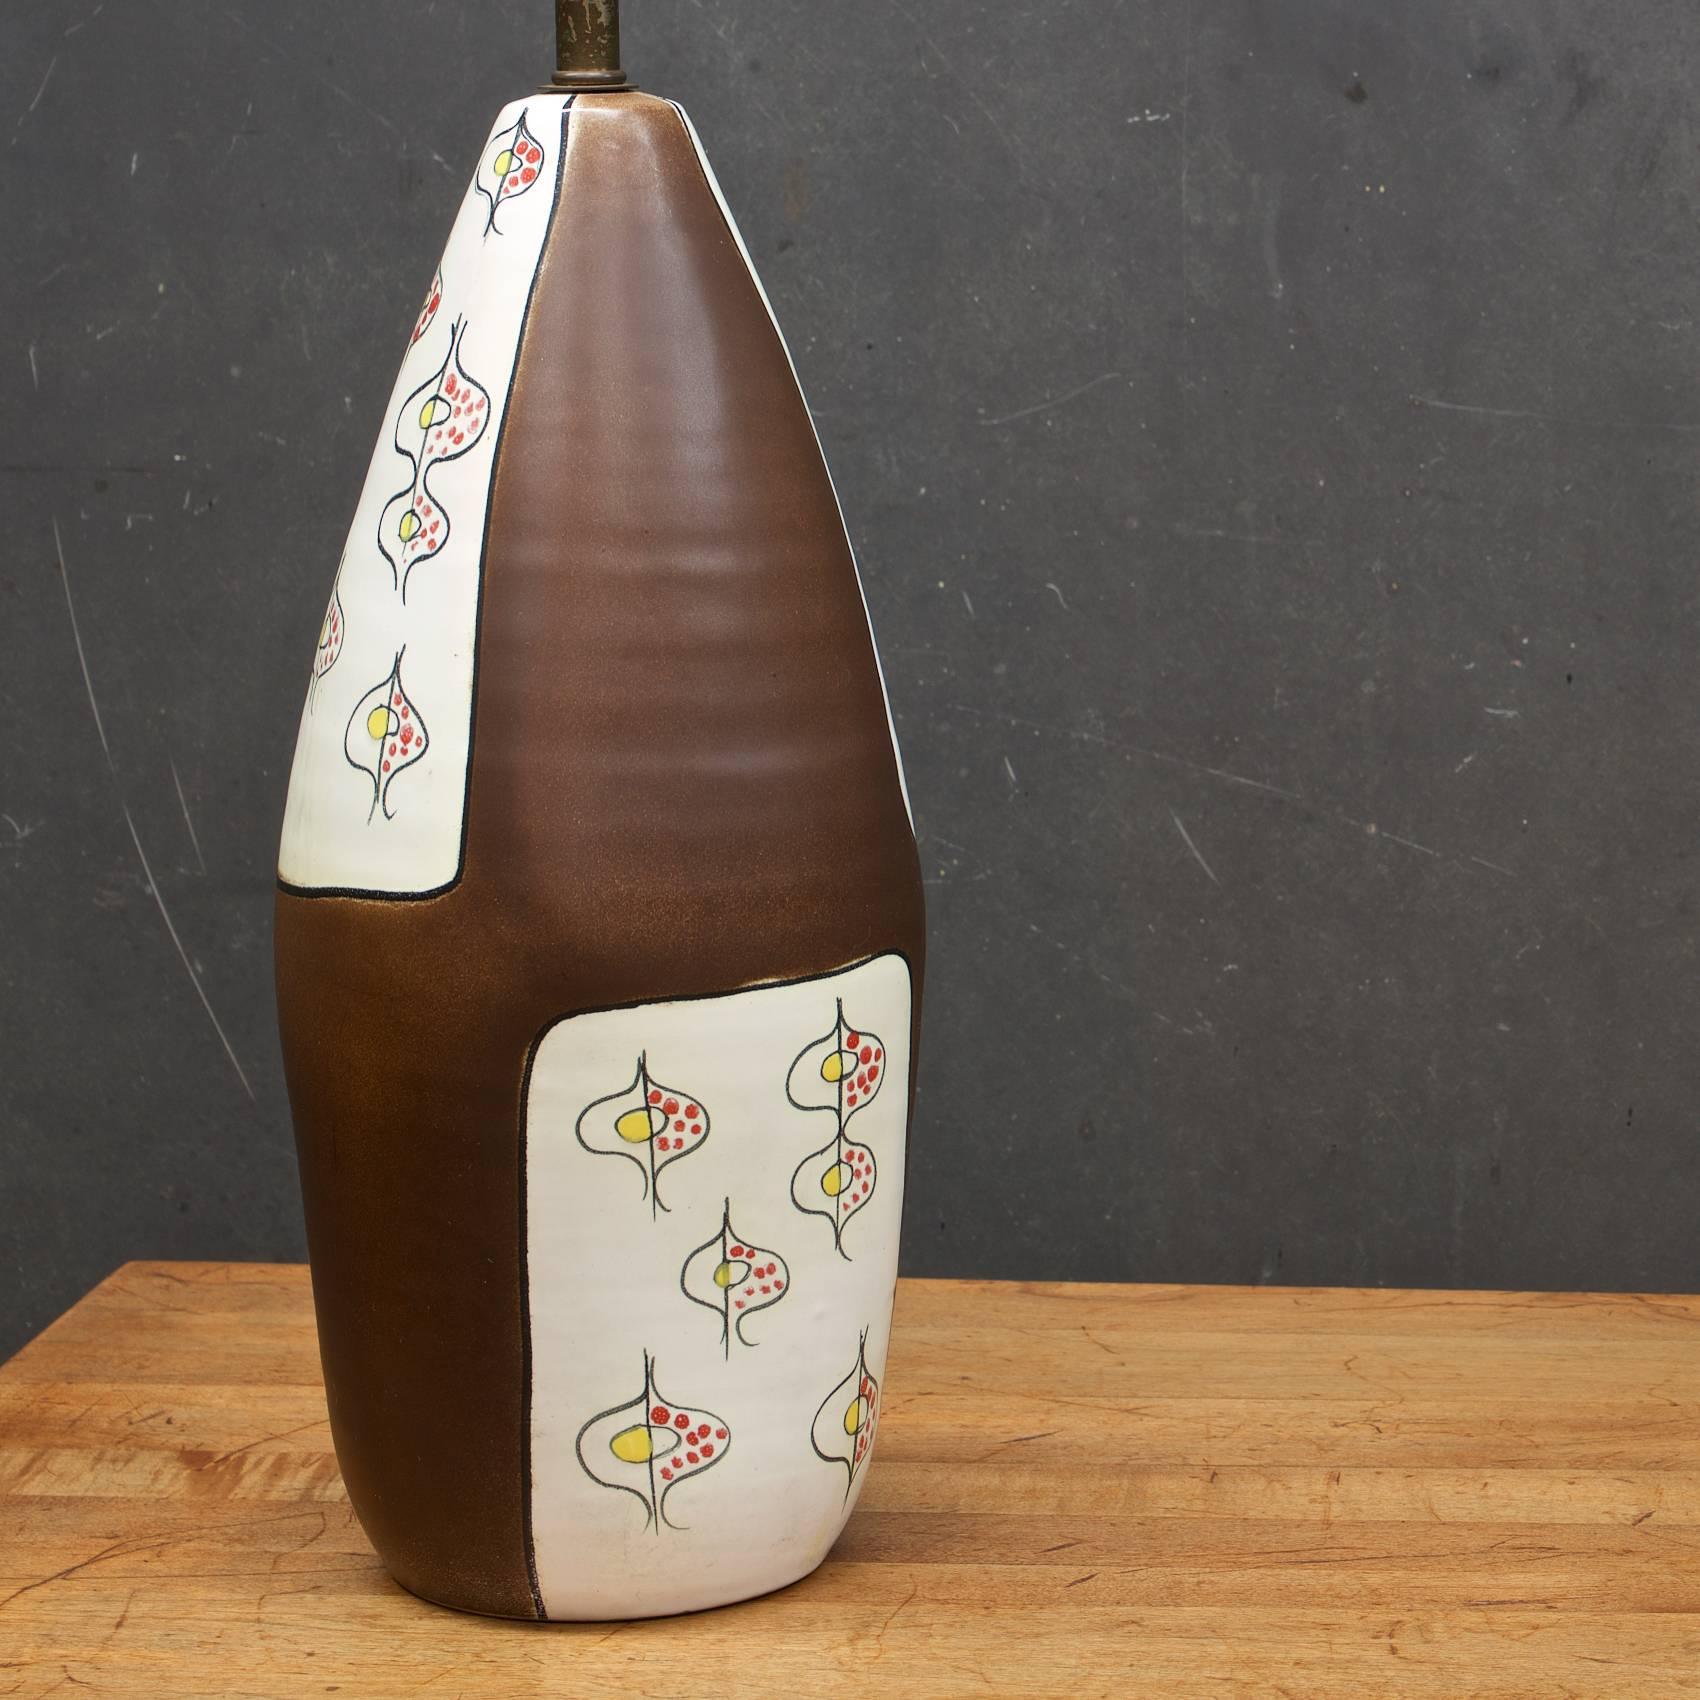 1950s Bitossi studio ceramic lamp. Biomorphic Designs. All original.